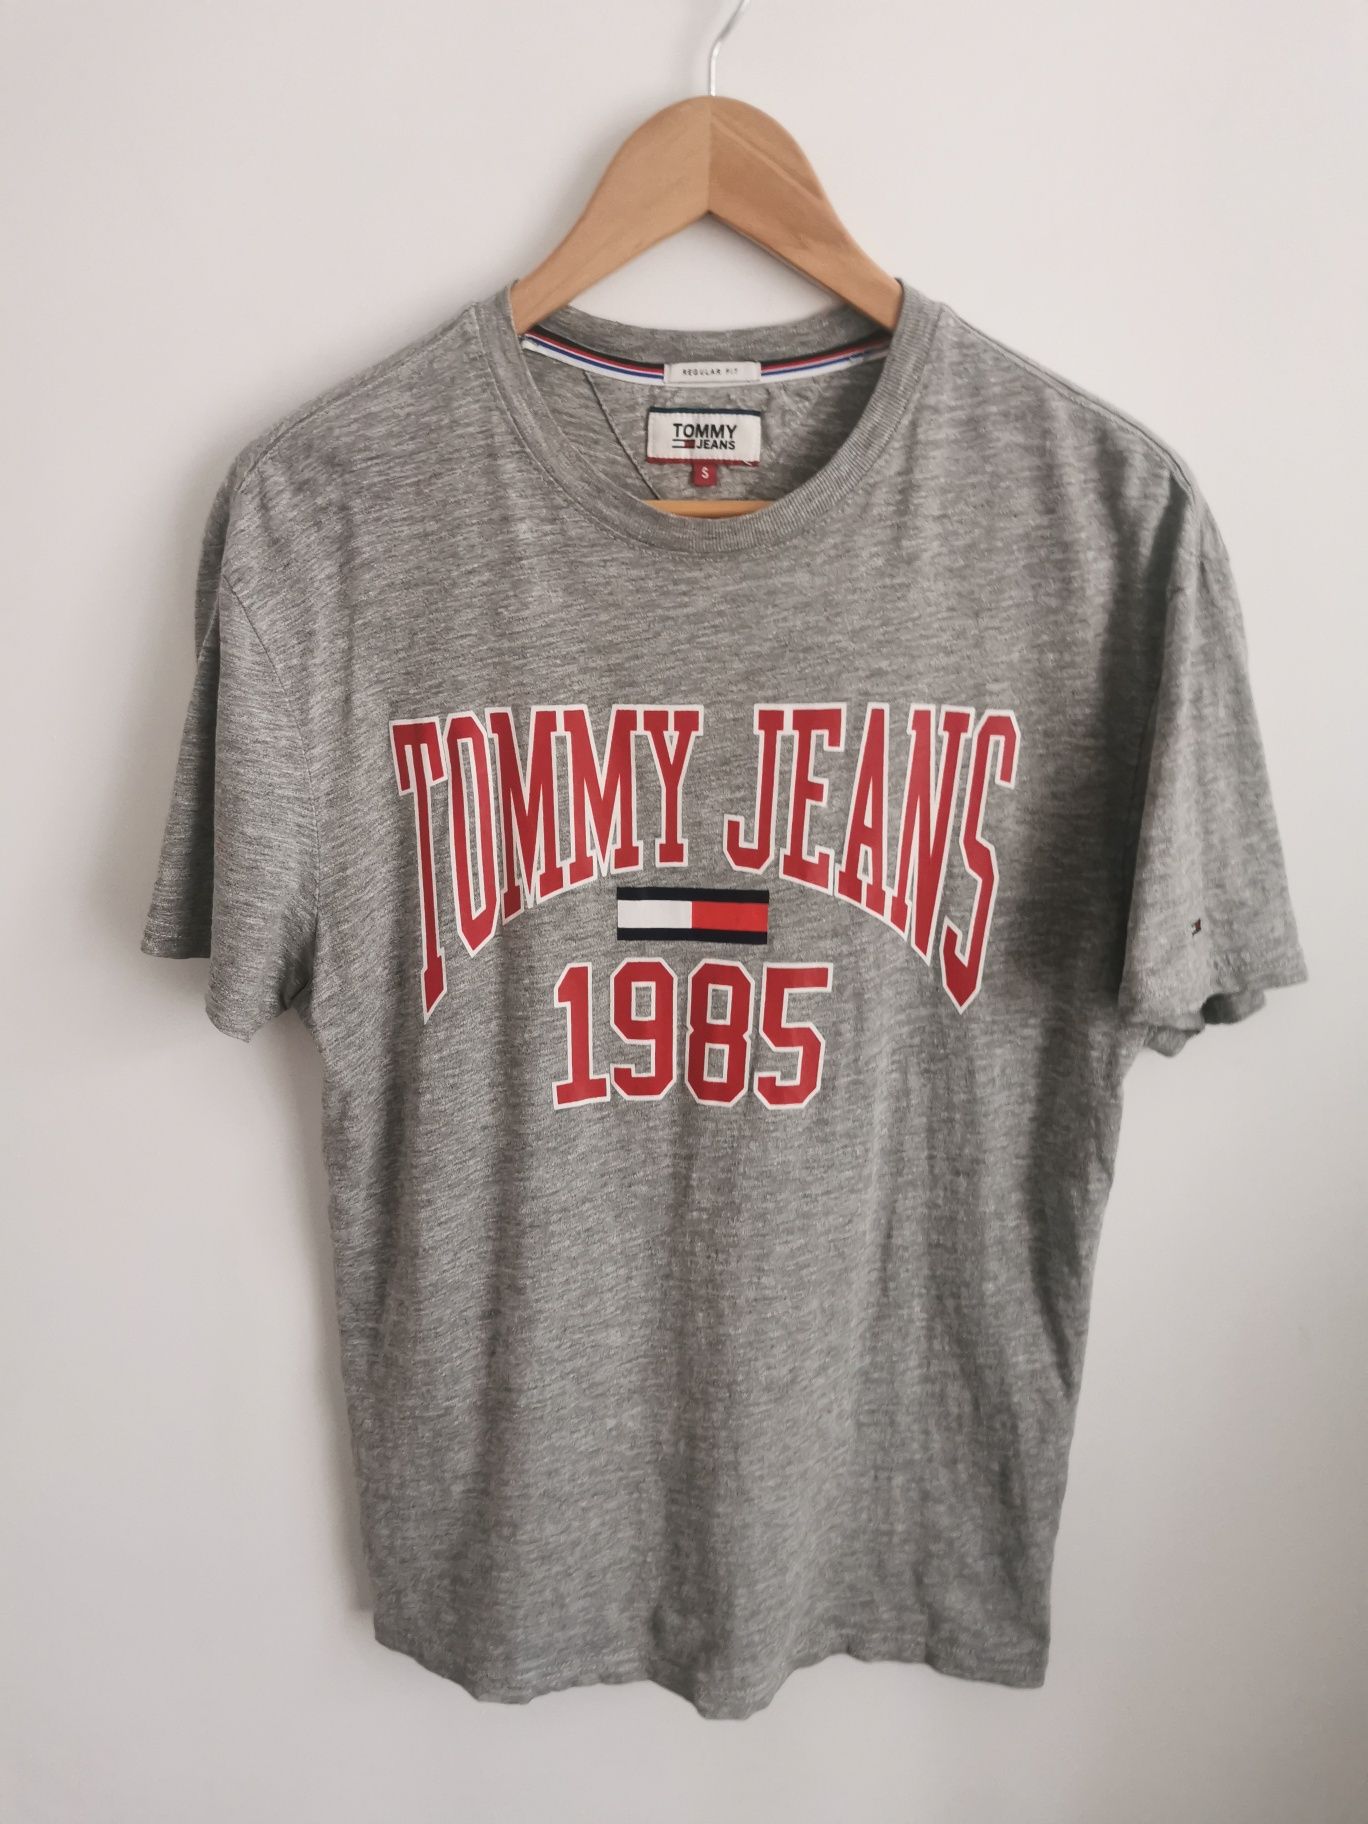 Tommy Jenas t-shirt koszulka krótki rękaw sportowa logowana męska S